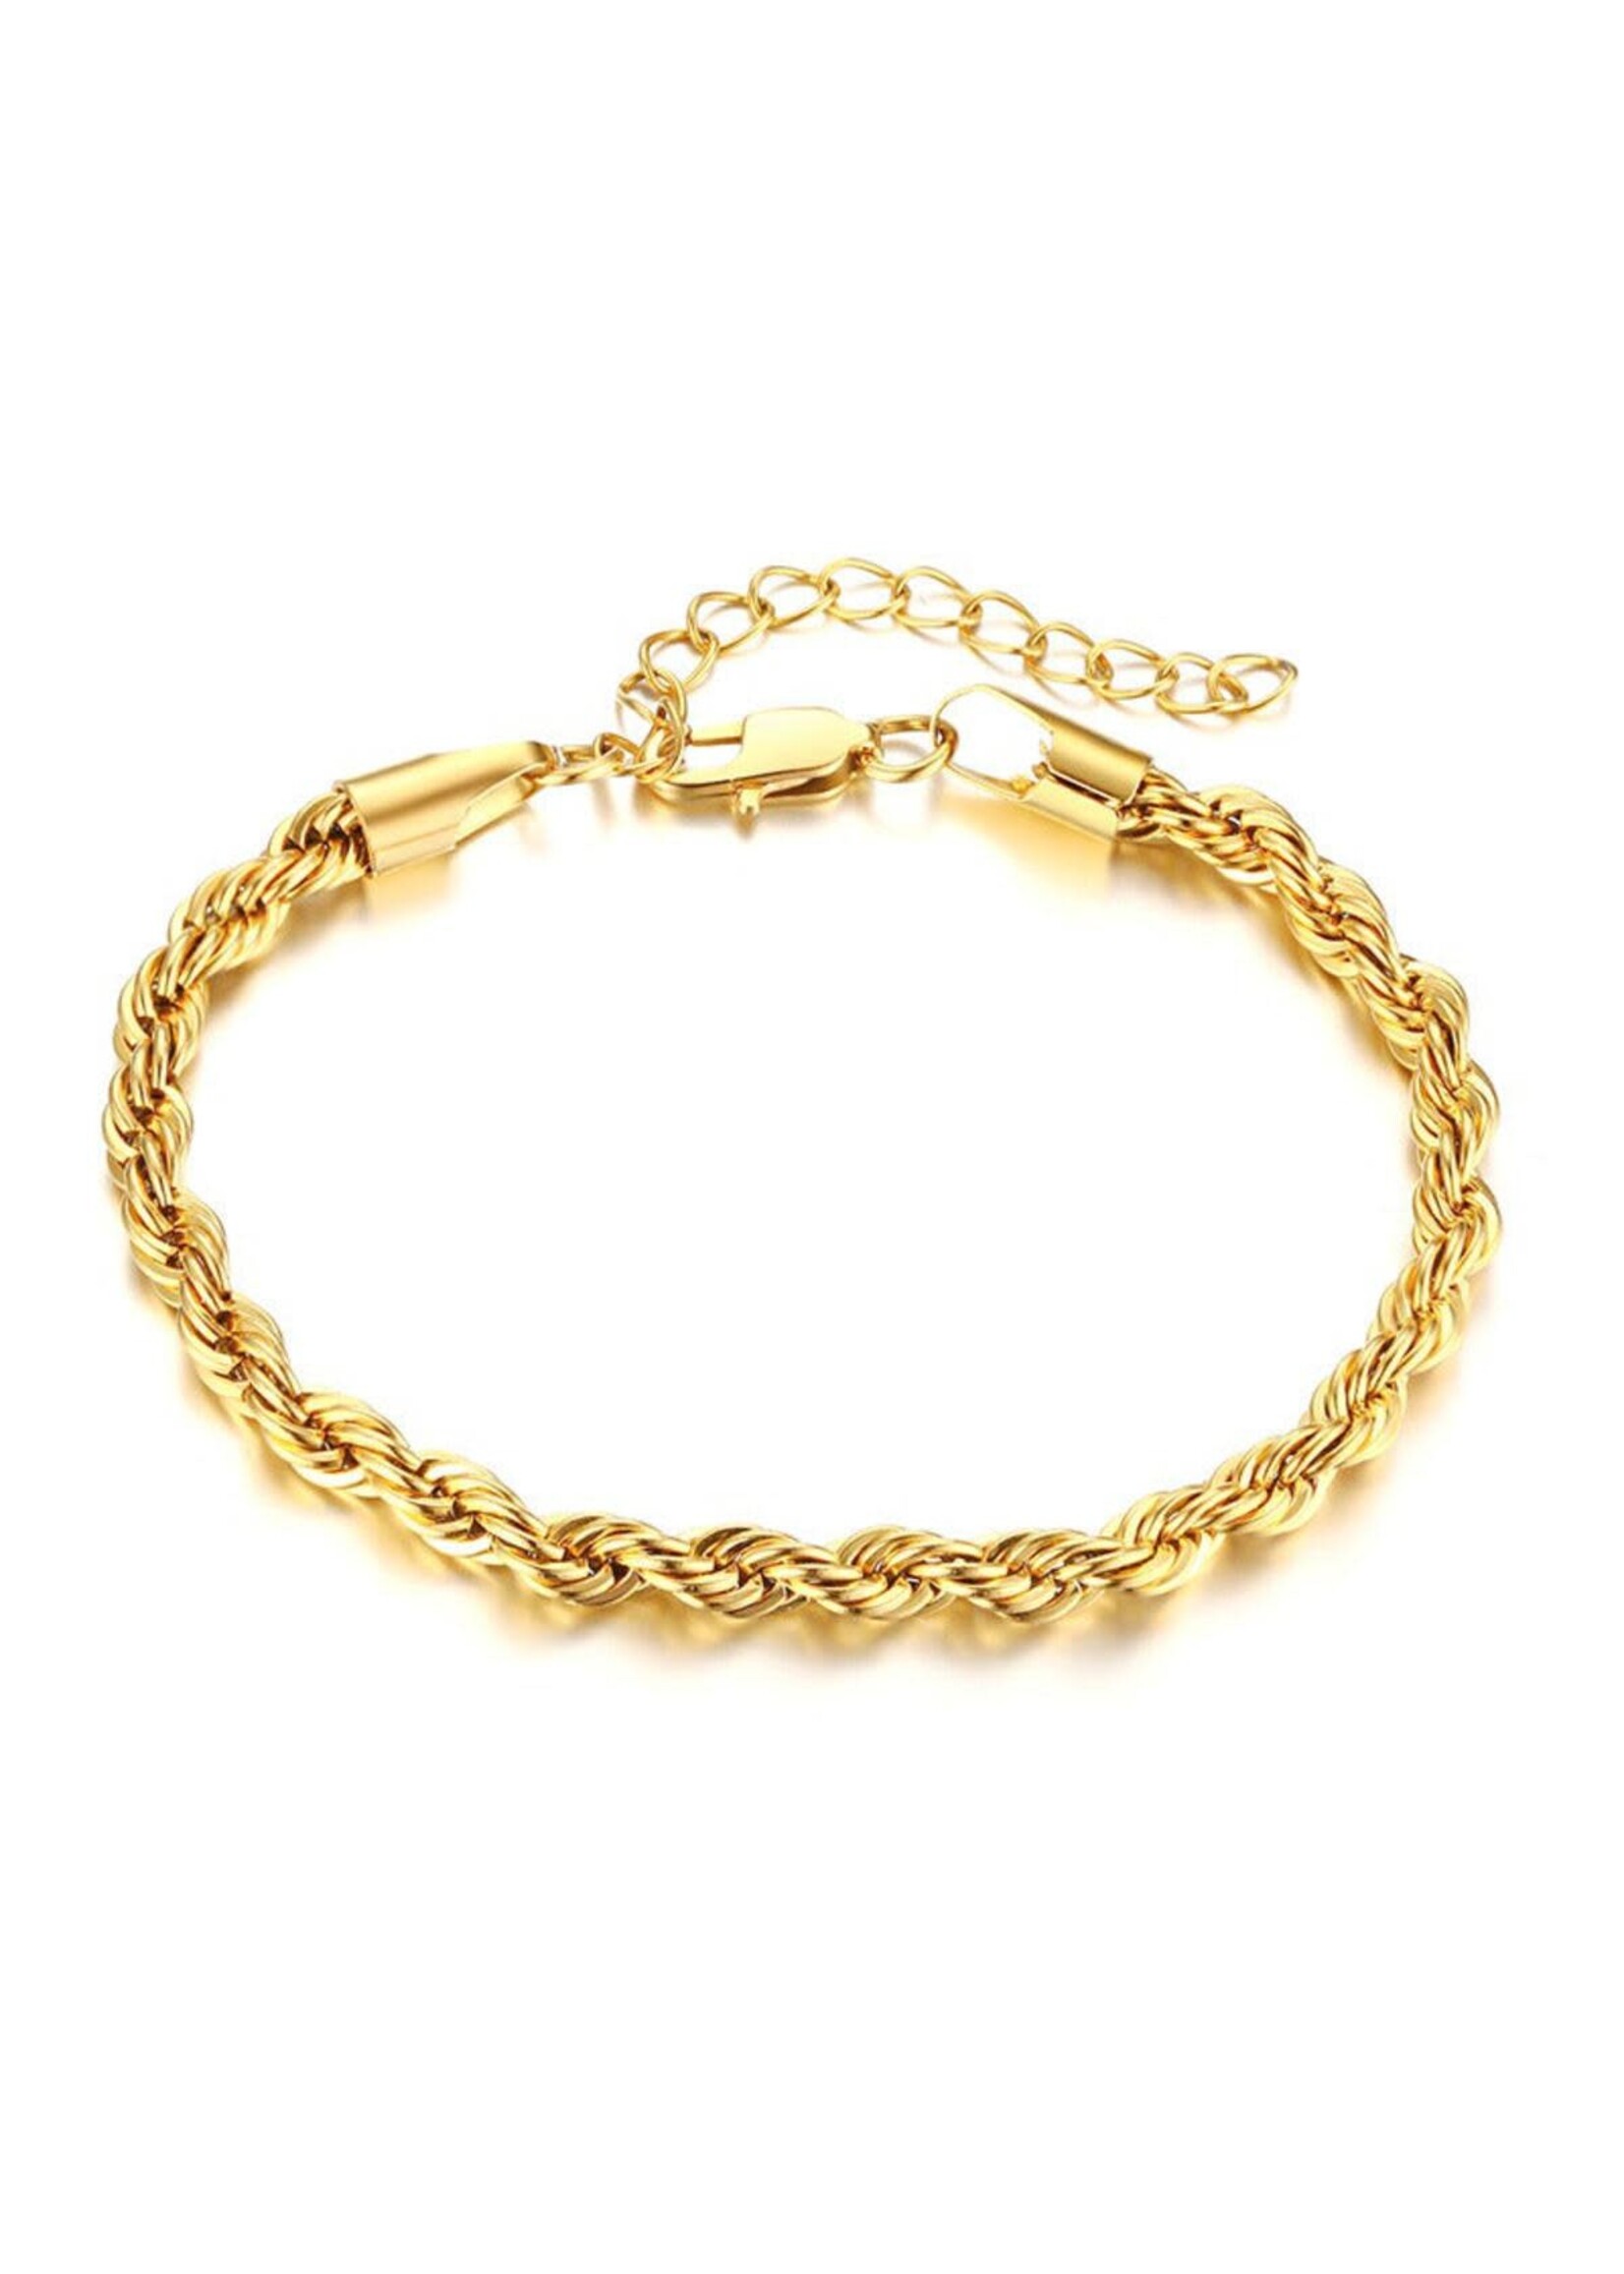 ALCO Jewelry Jetty Sunrise Bracelet